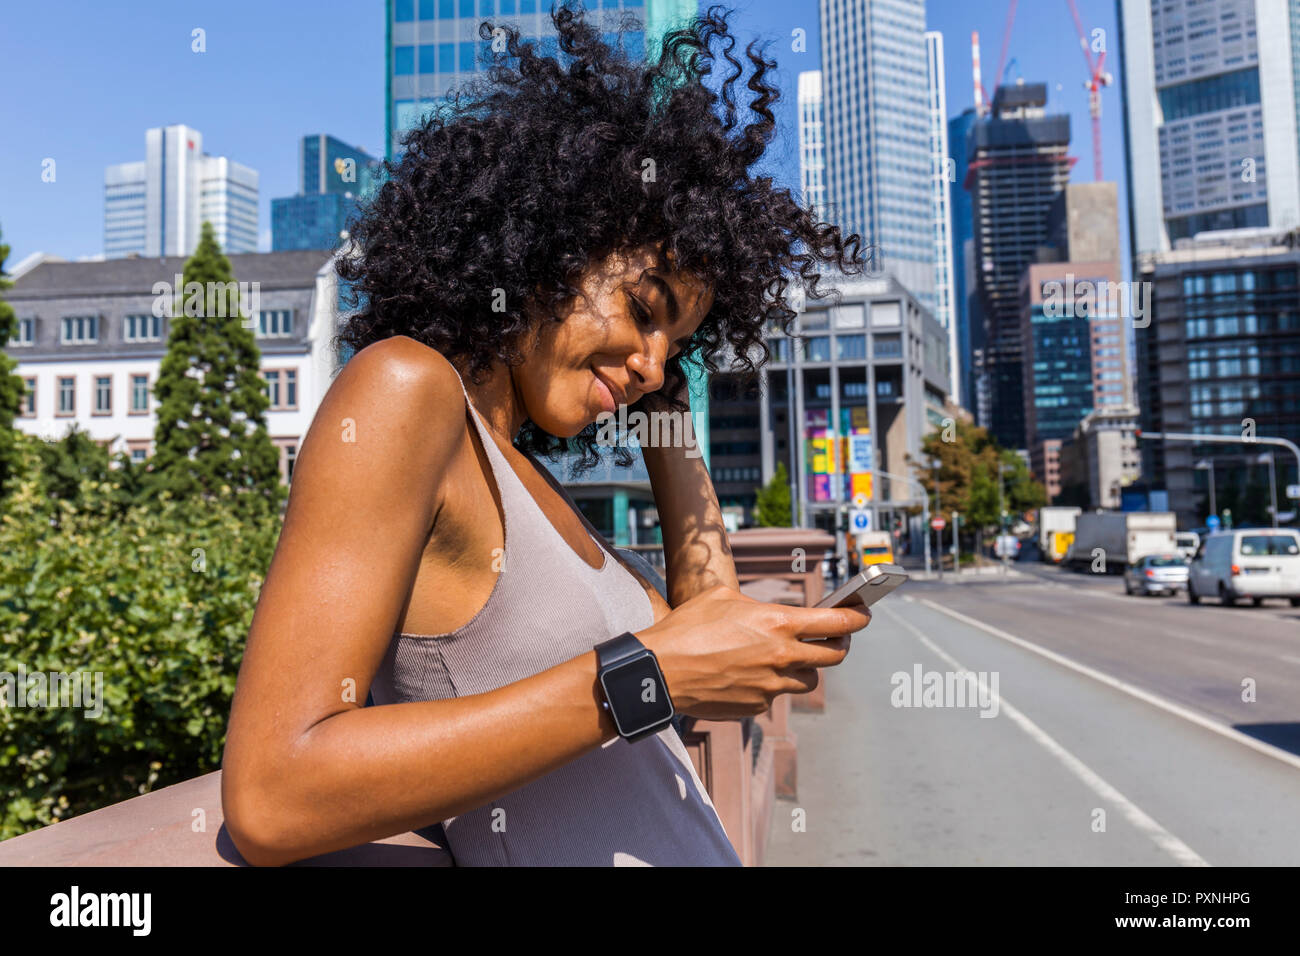 Germania, Francoforte, ritratto di sorridente giovane donna con capelli ricci usando il cellulare in città Foto Stock